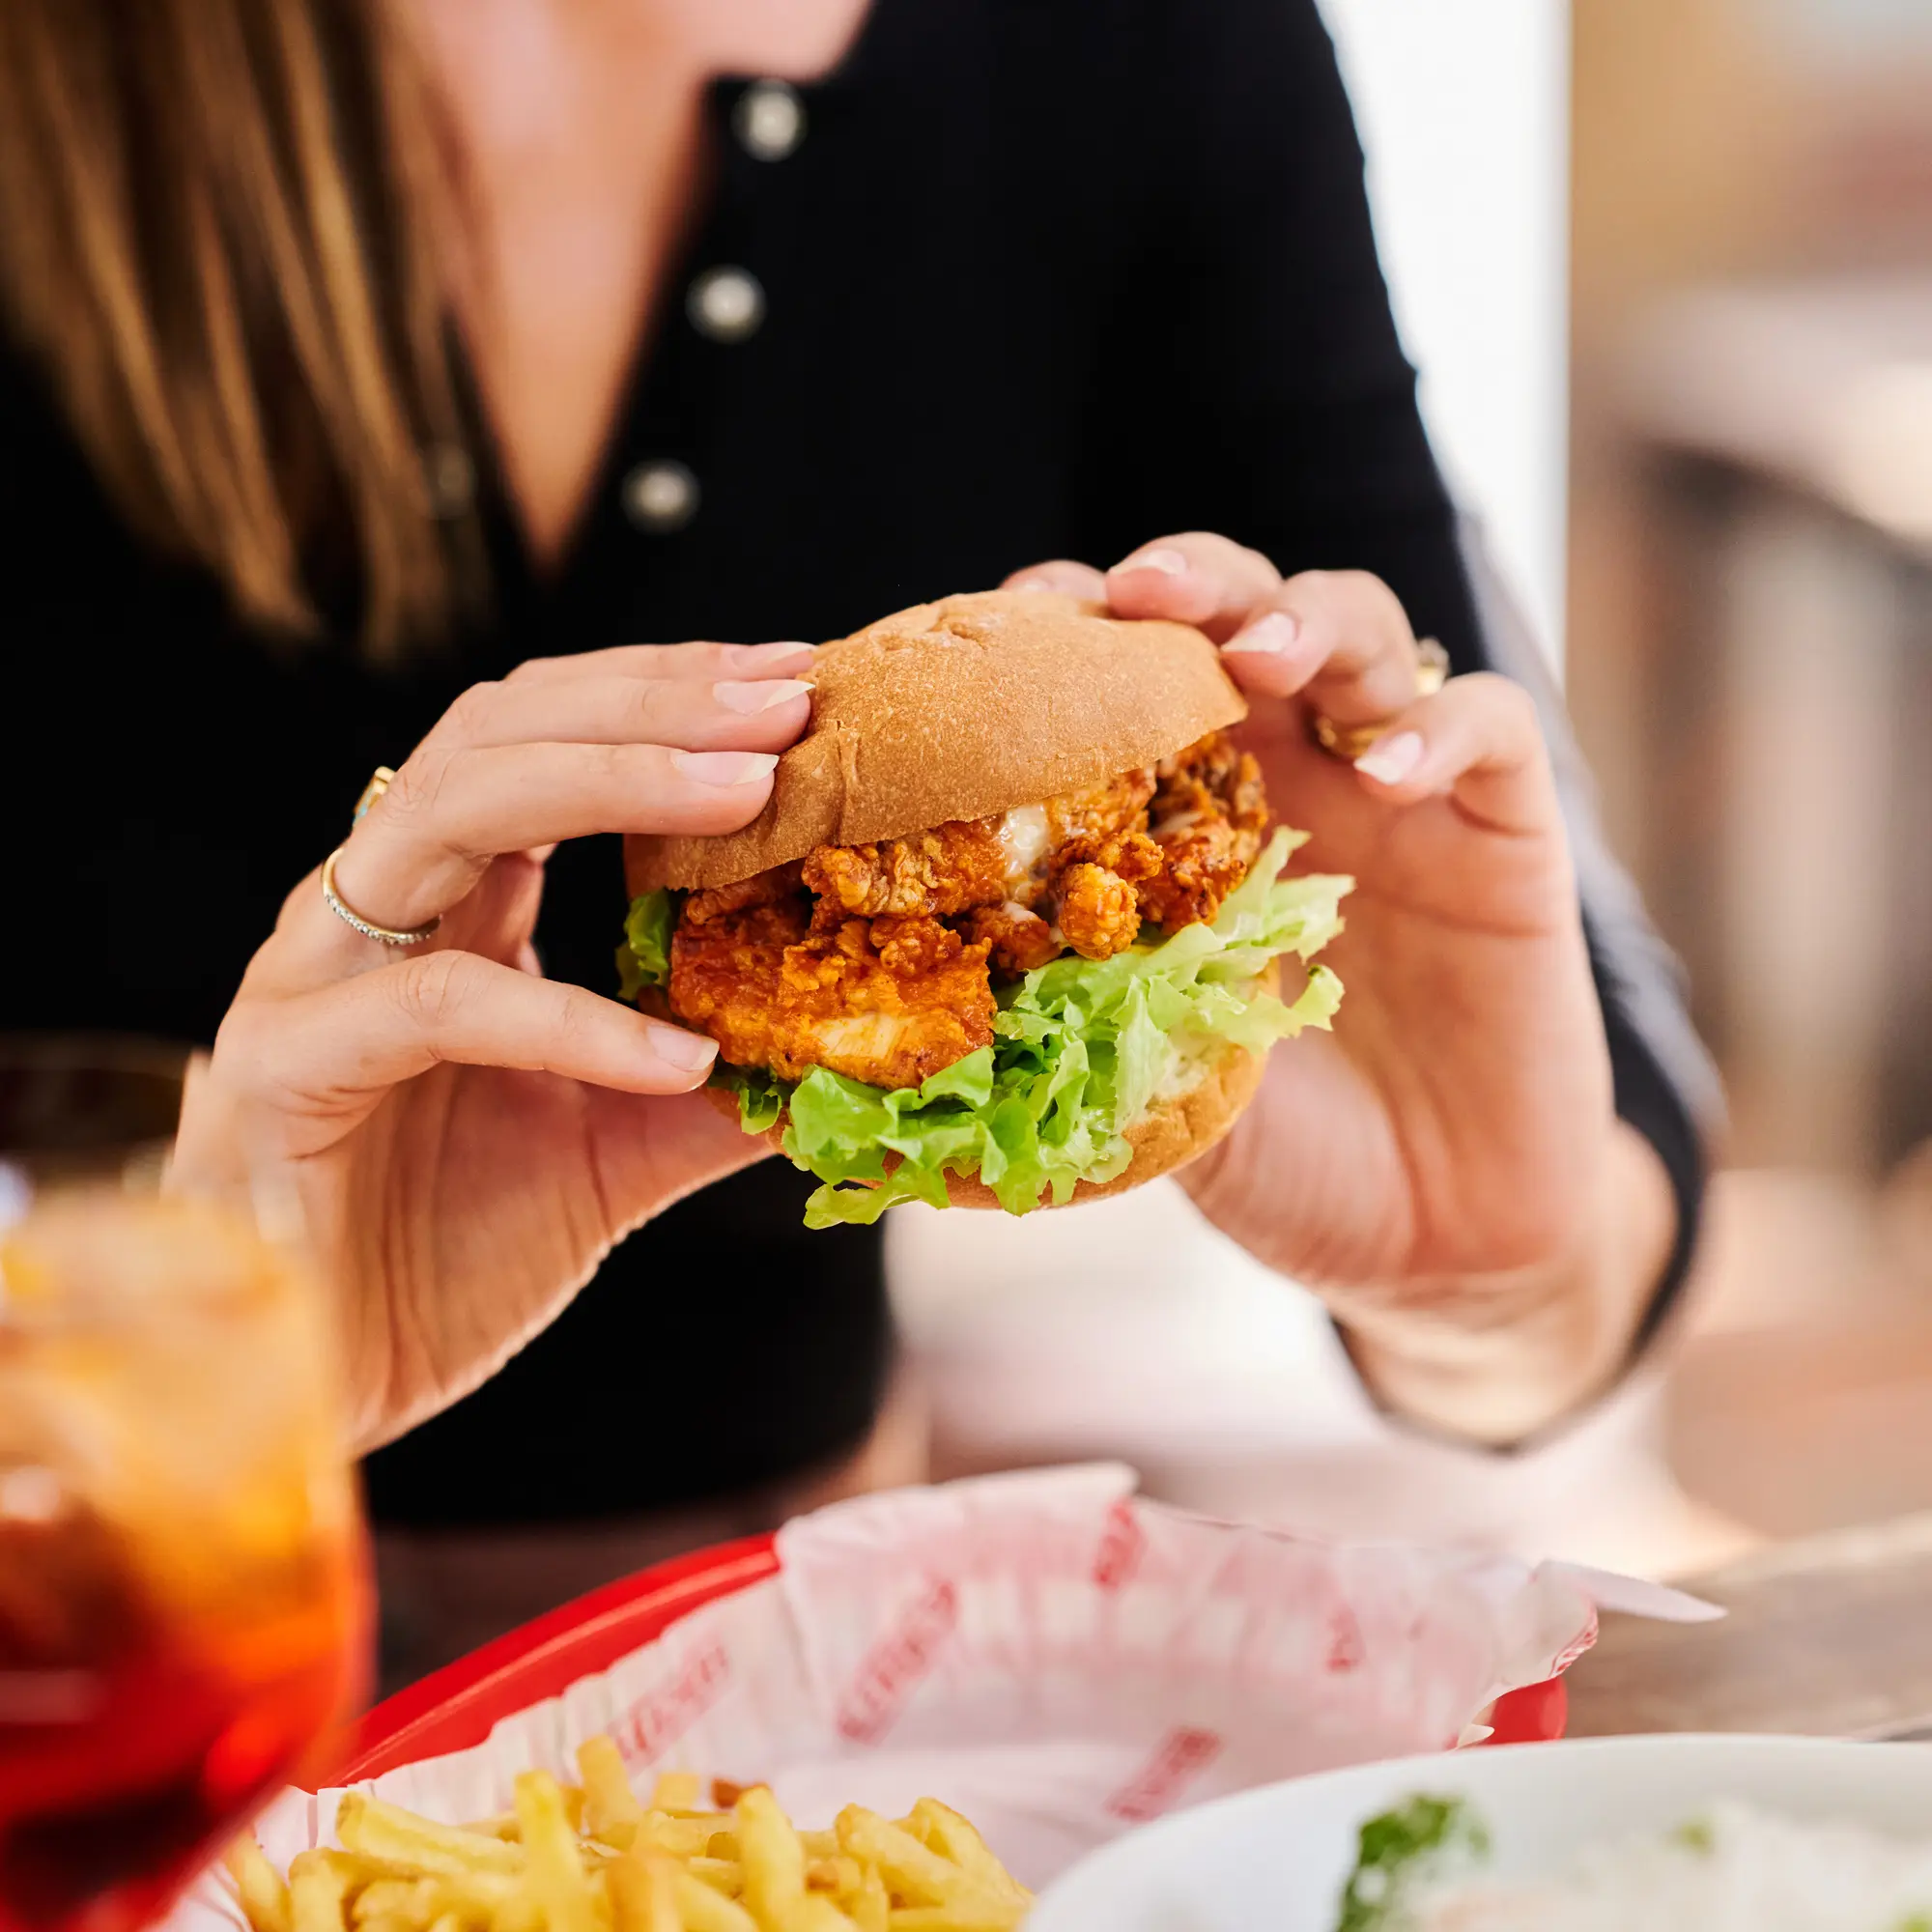 Woman holding Bleachers burger